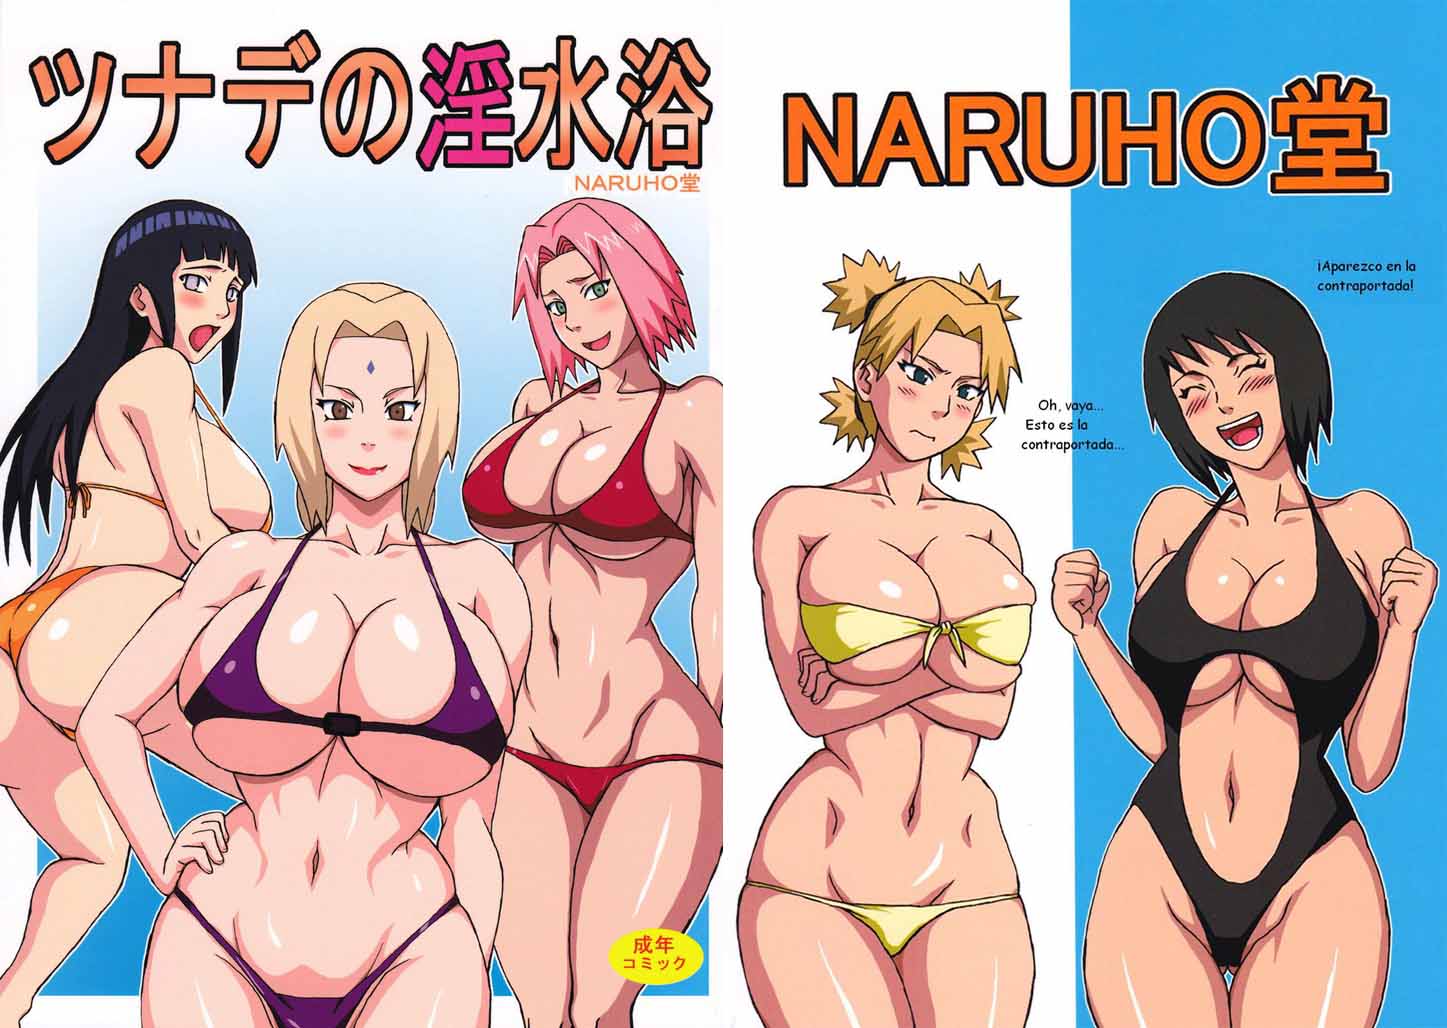 Comic Porno Naruto Hinata Sakura desnudas imagen Foto